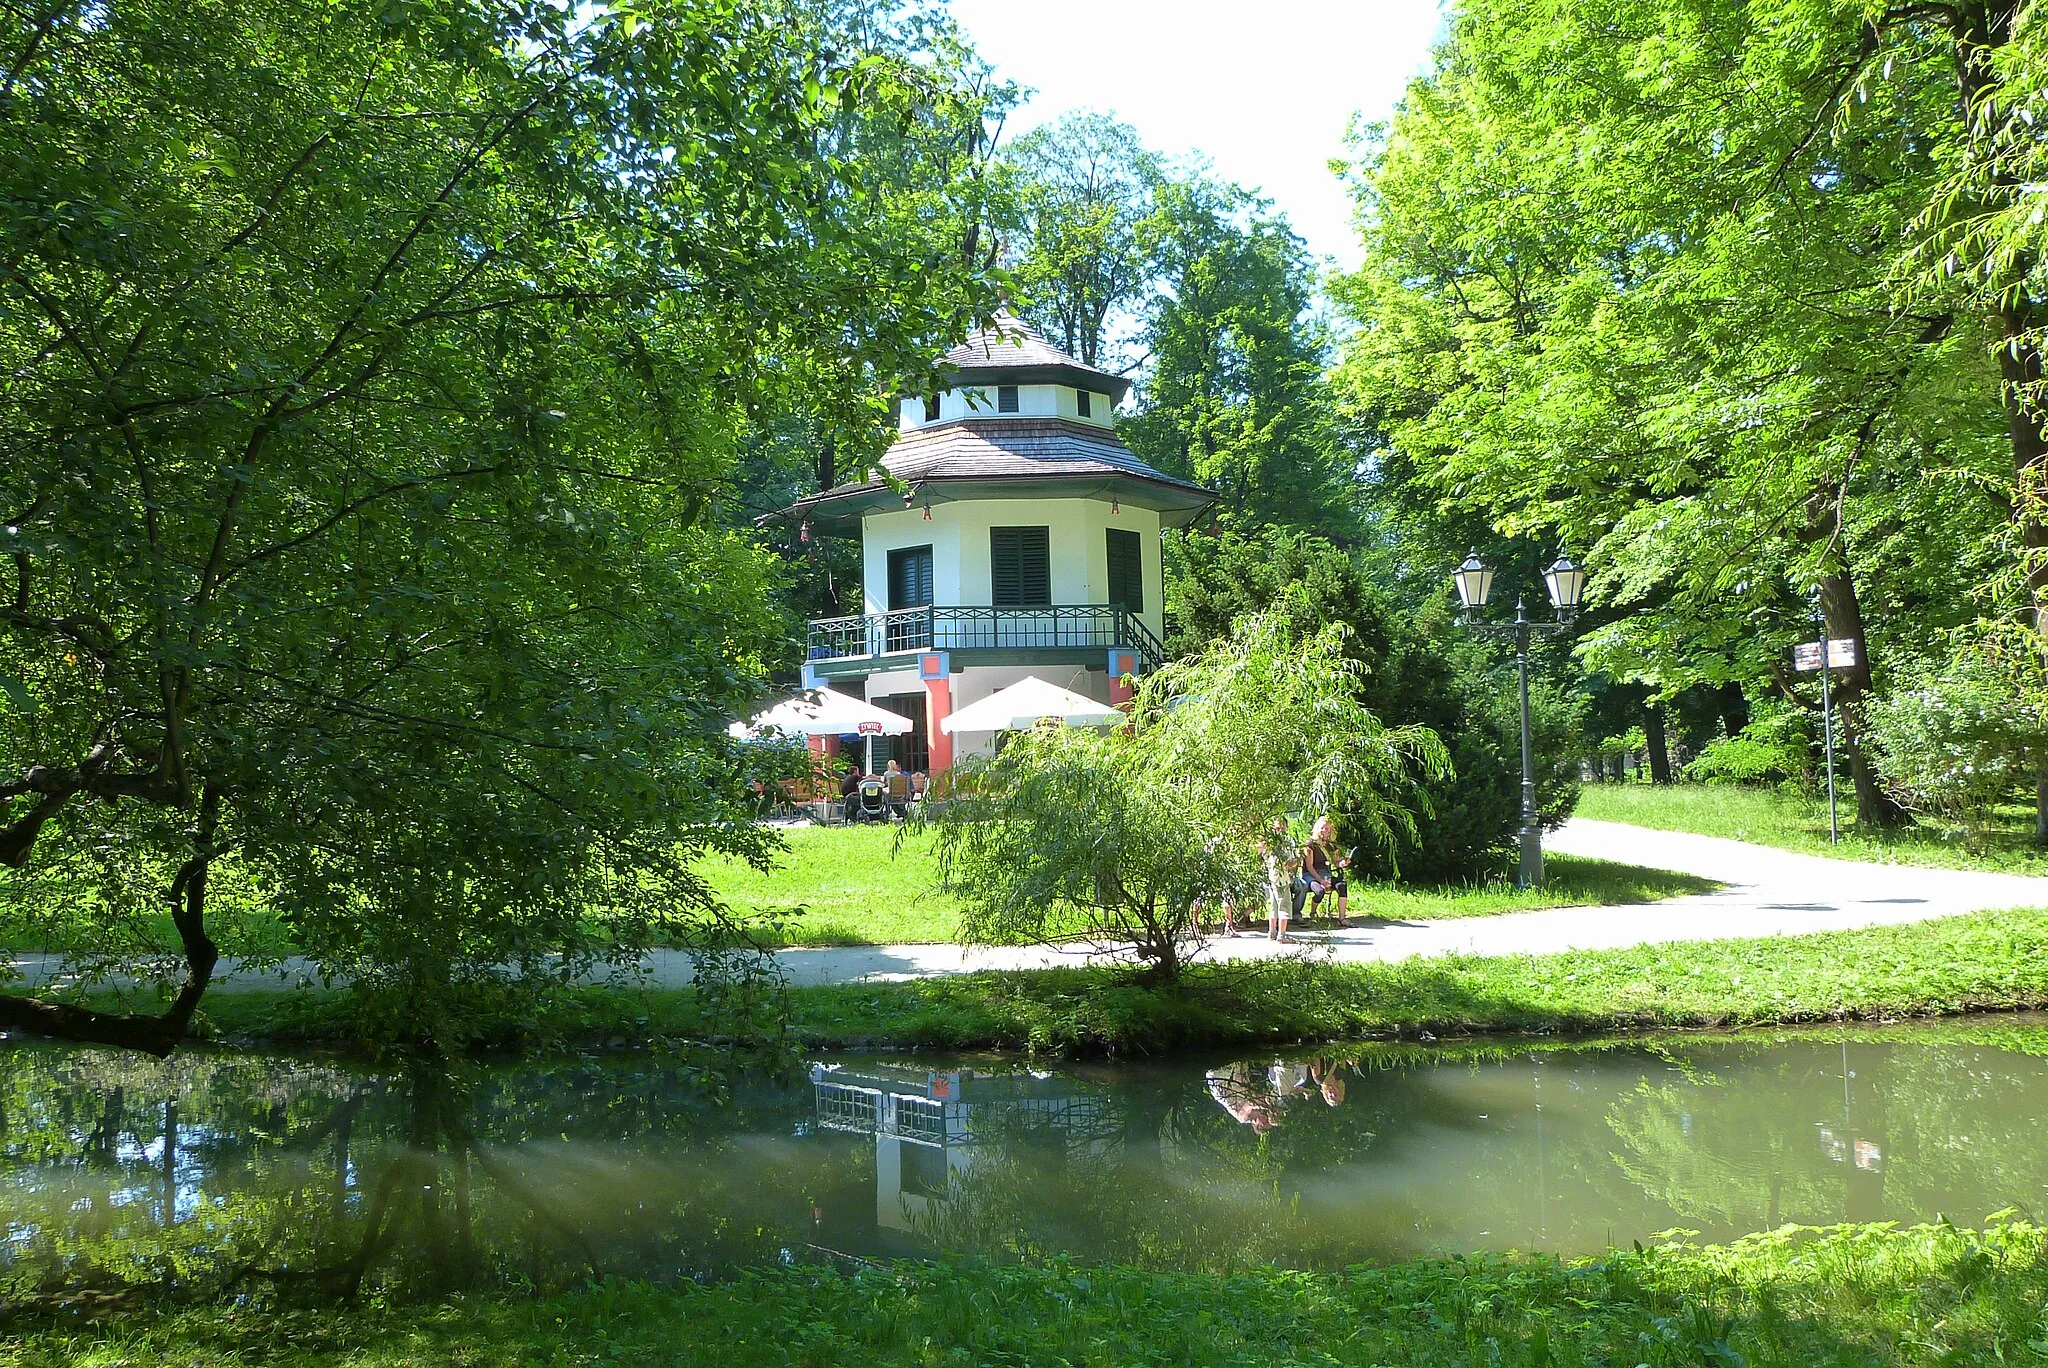 Photo showing: Domek Chiński – zabytkowa altana położona w żywieckim parku, wybudowana w drugiej połowie XVIII wieku przez Wielopolskich.